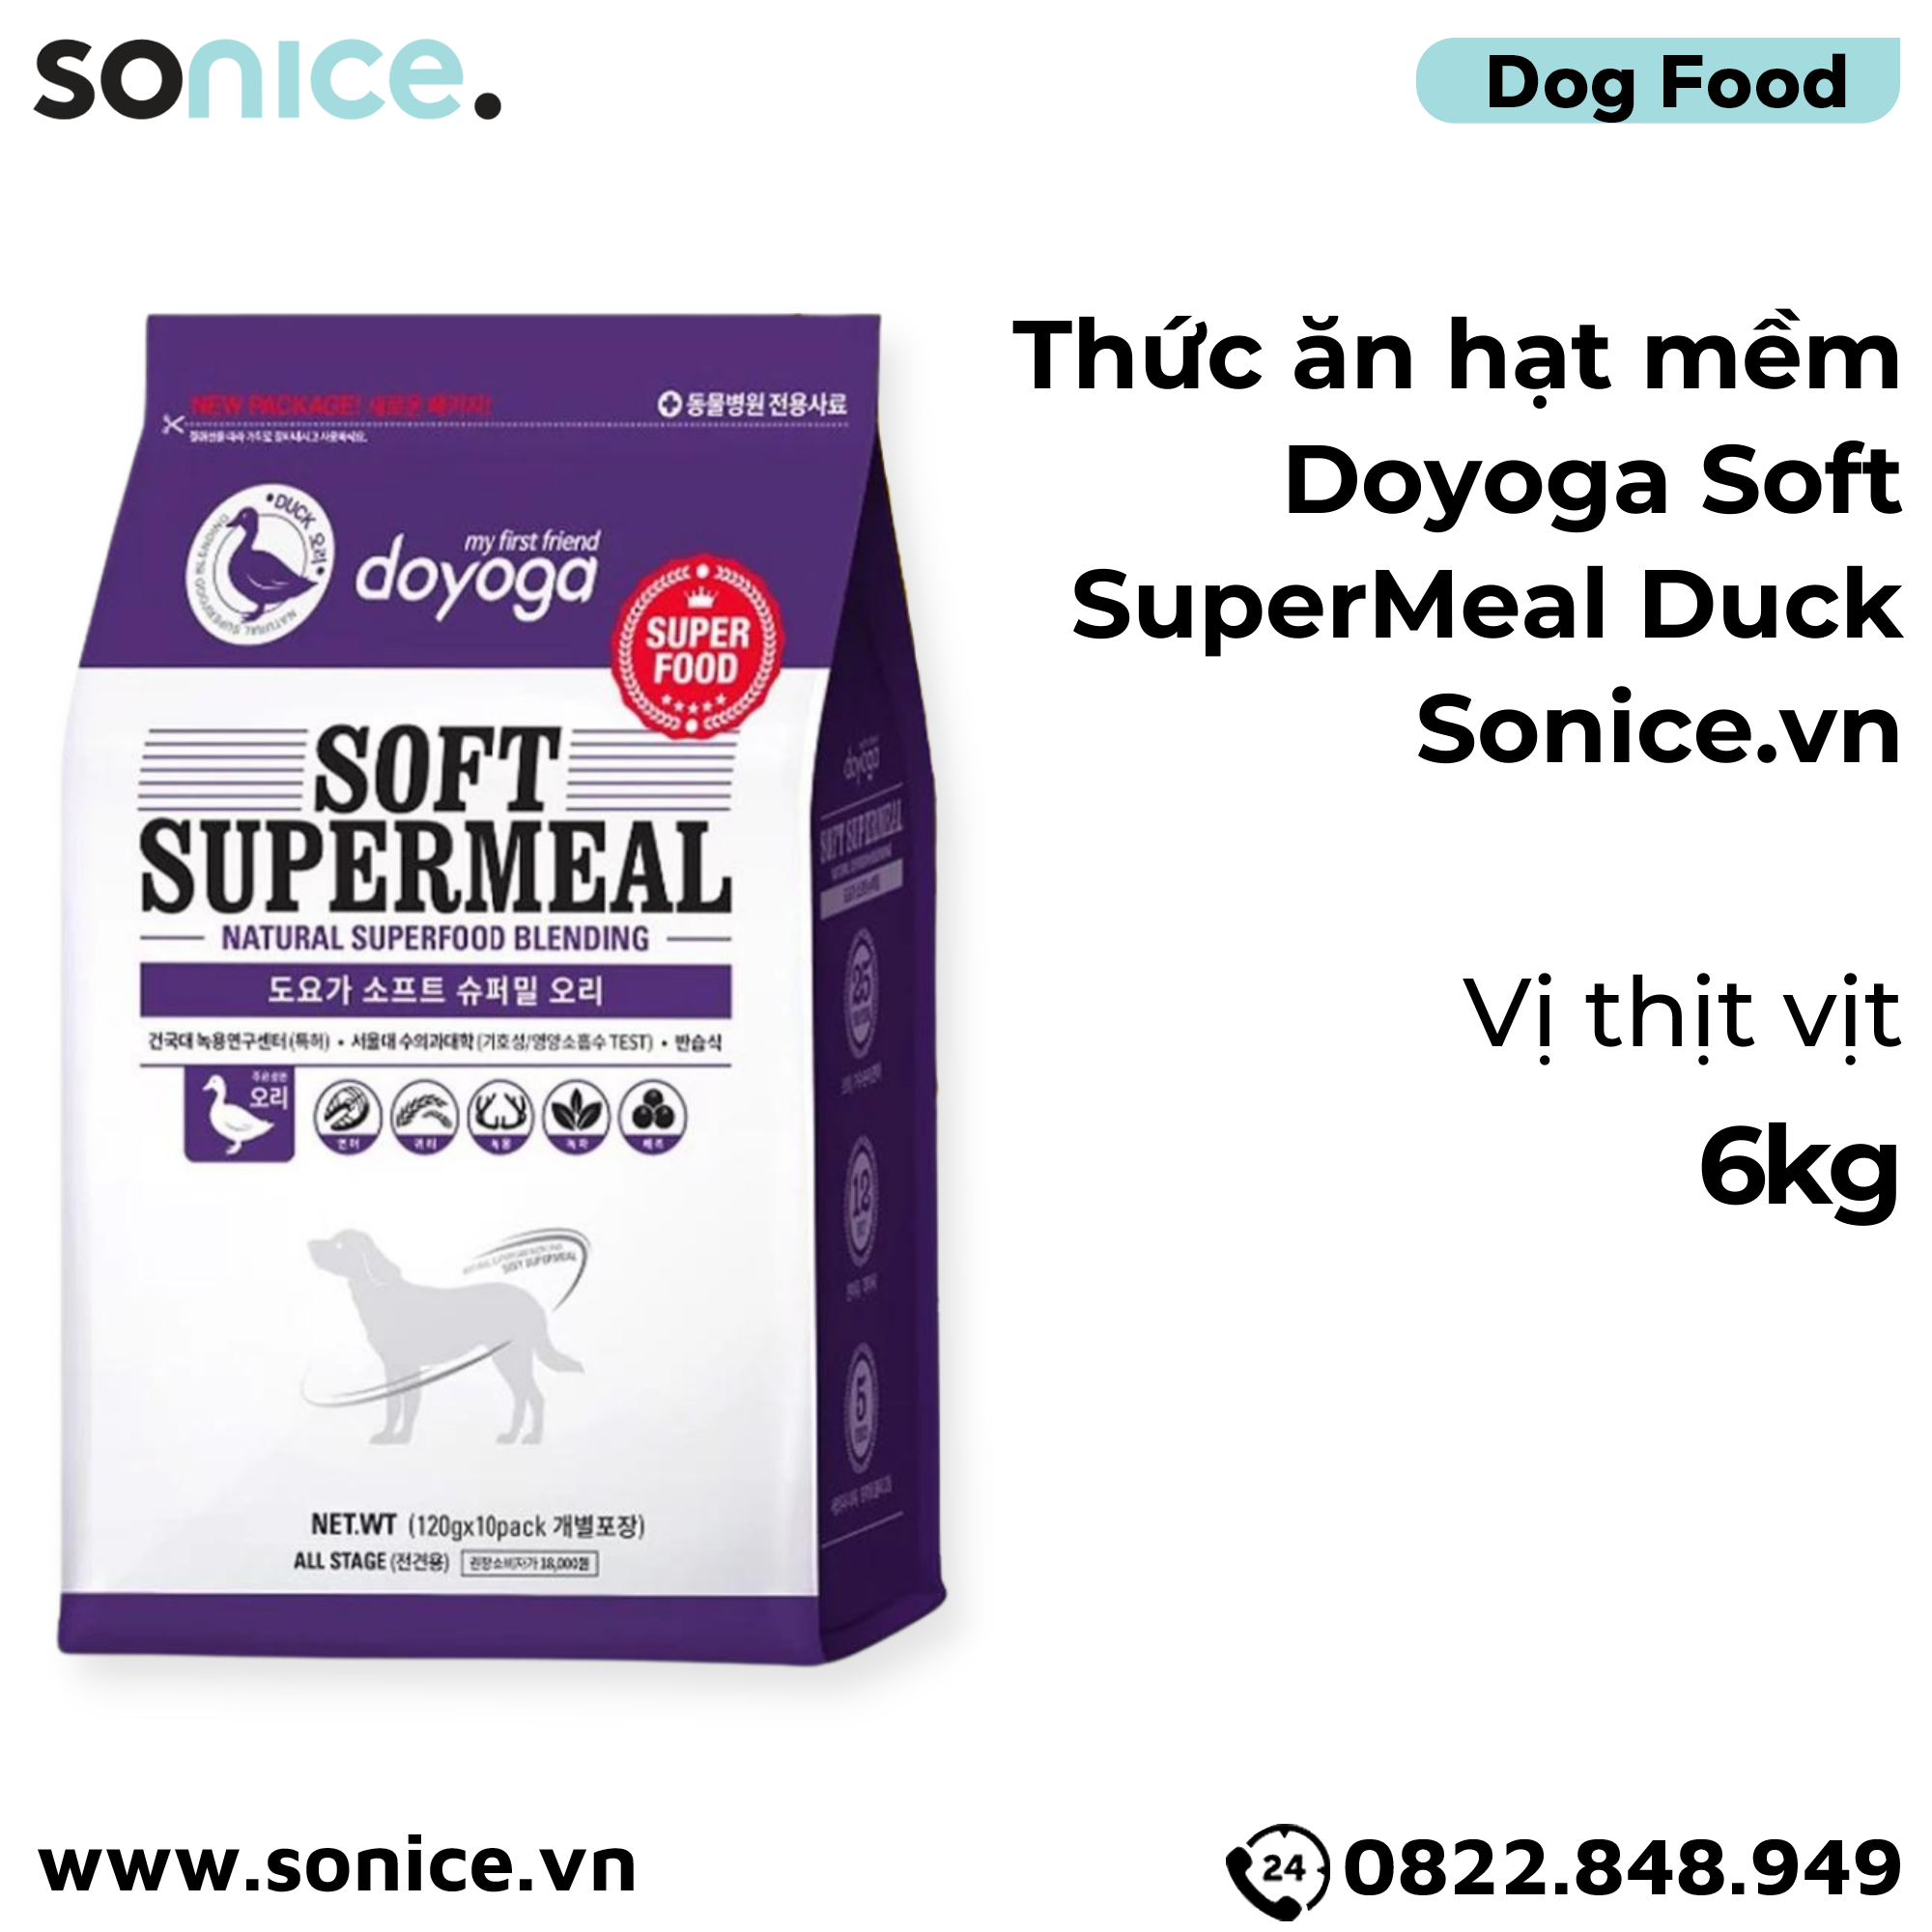  Thức ăn hạt mềm Doyoga Soft SuperMeal Duck 6kg - vị vịt SONICE. 